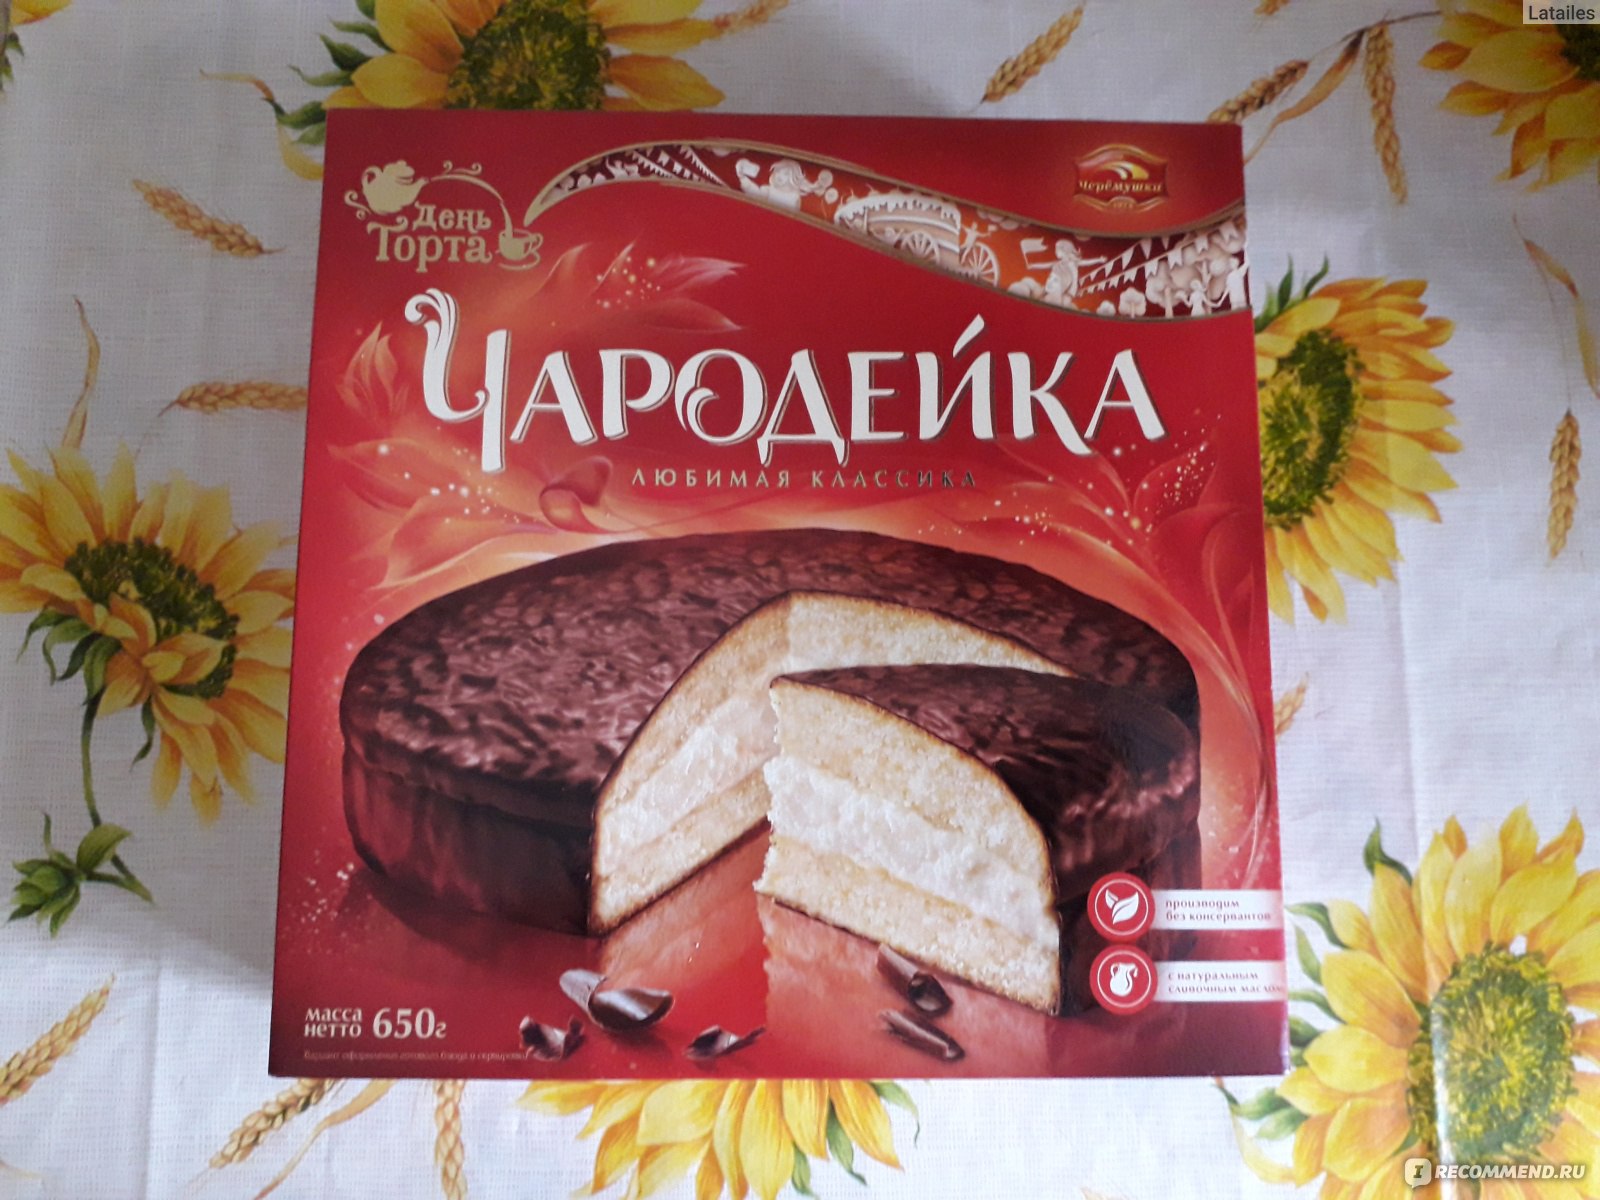 Торт Чародейка упаковка